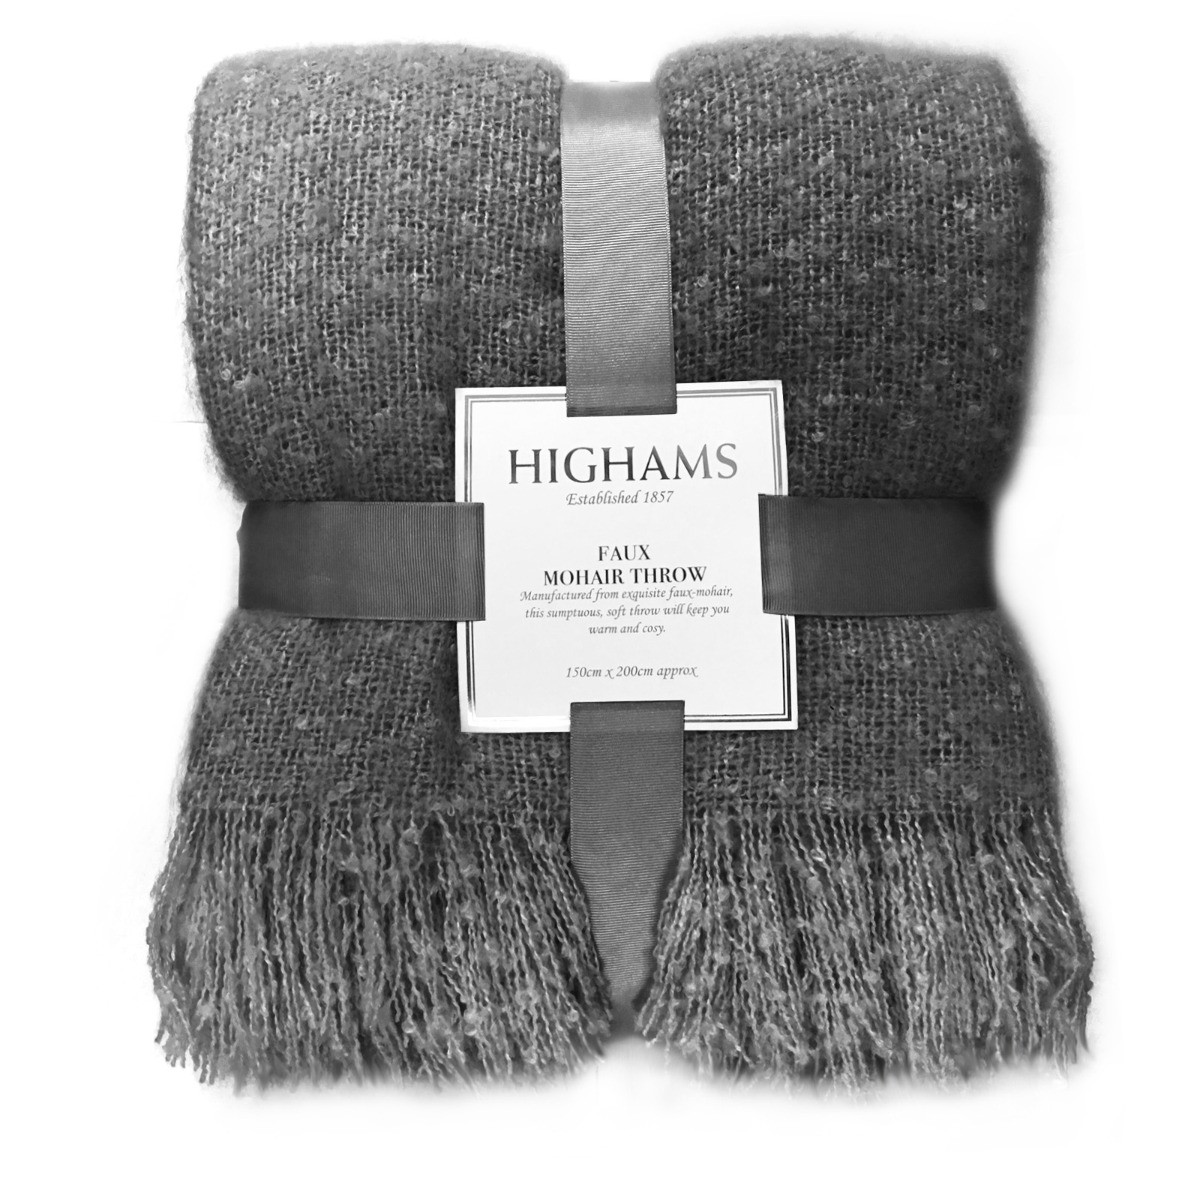 Highams Mohair Throw, Charcoal Grey - 150 x 200cm>